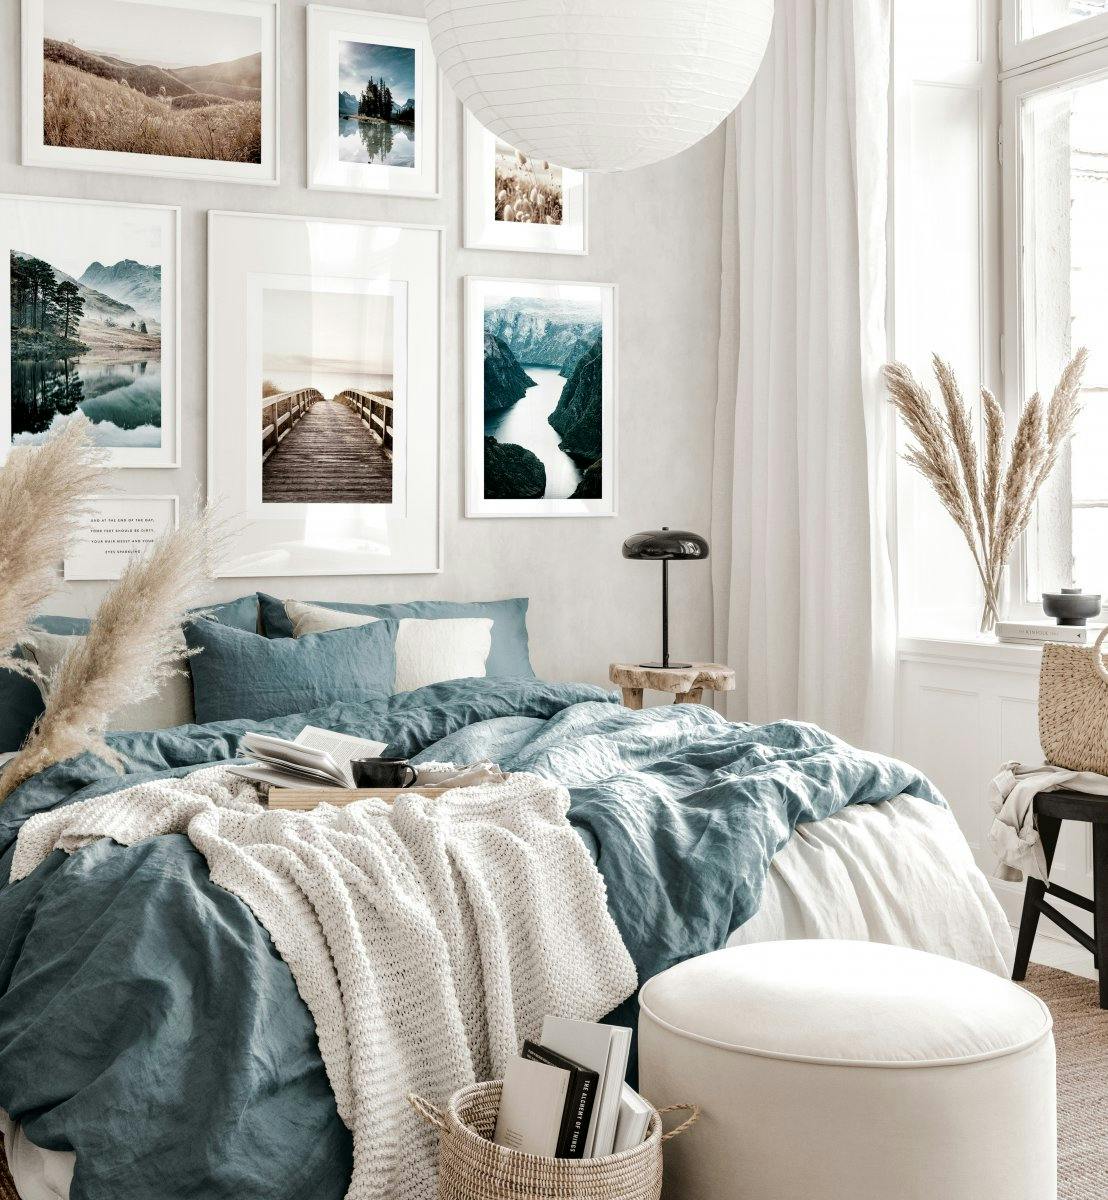 Subtelna galeria obrazow niebiesko bezowa sypialnia plakaty przyrodnicze biale drewniane ramki